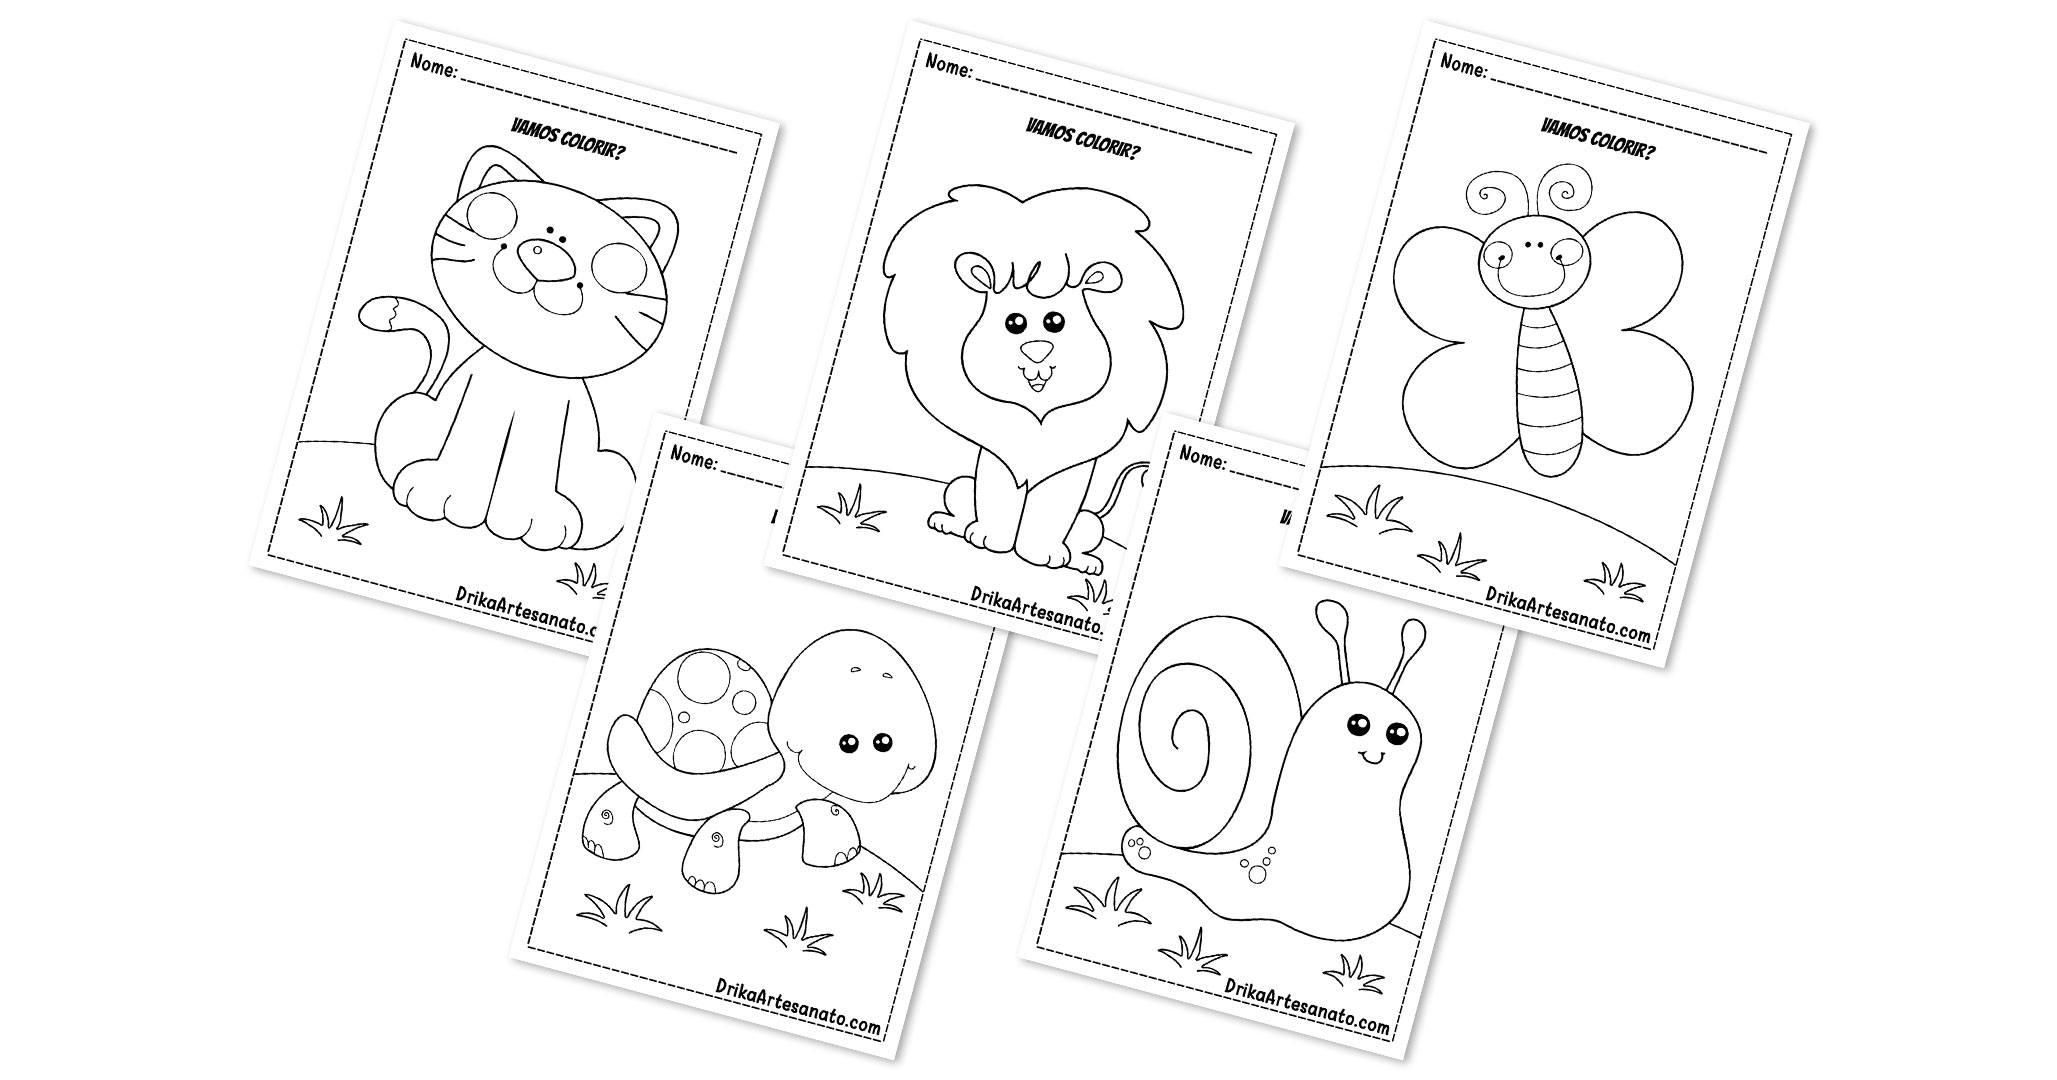 50 Desenhos de Gato para Imprimir e Colorir - Online Cursos Gratuitos